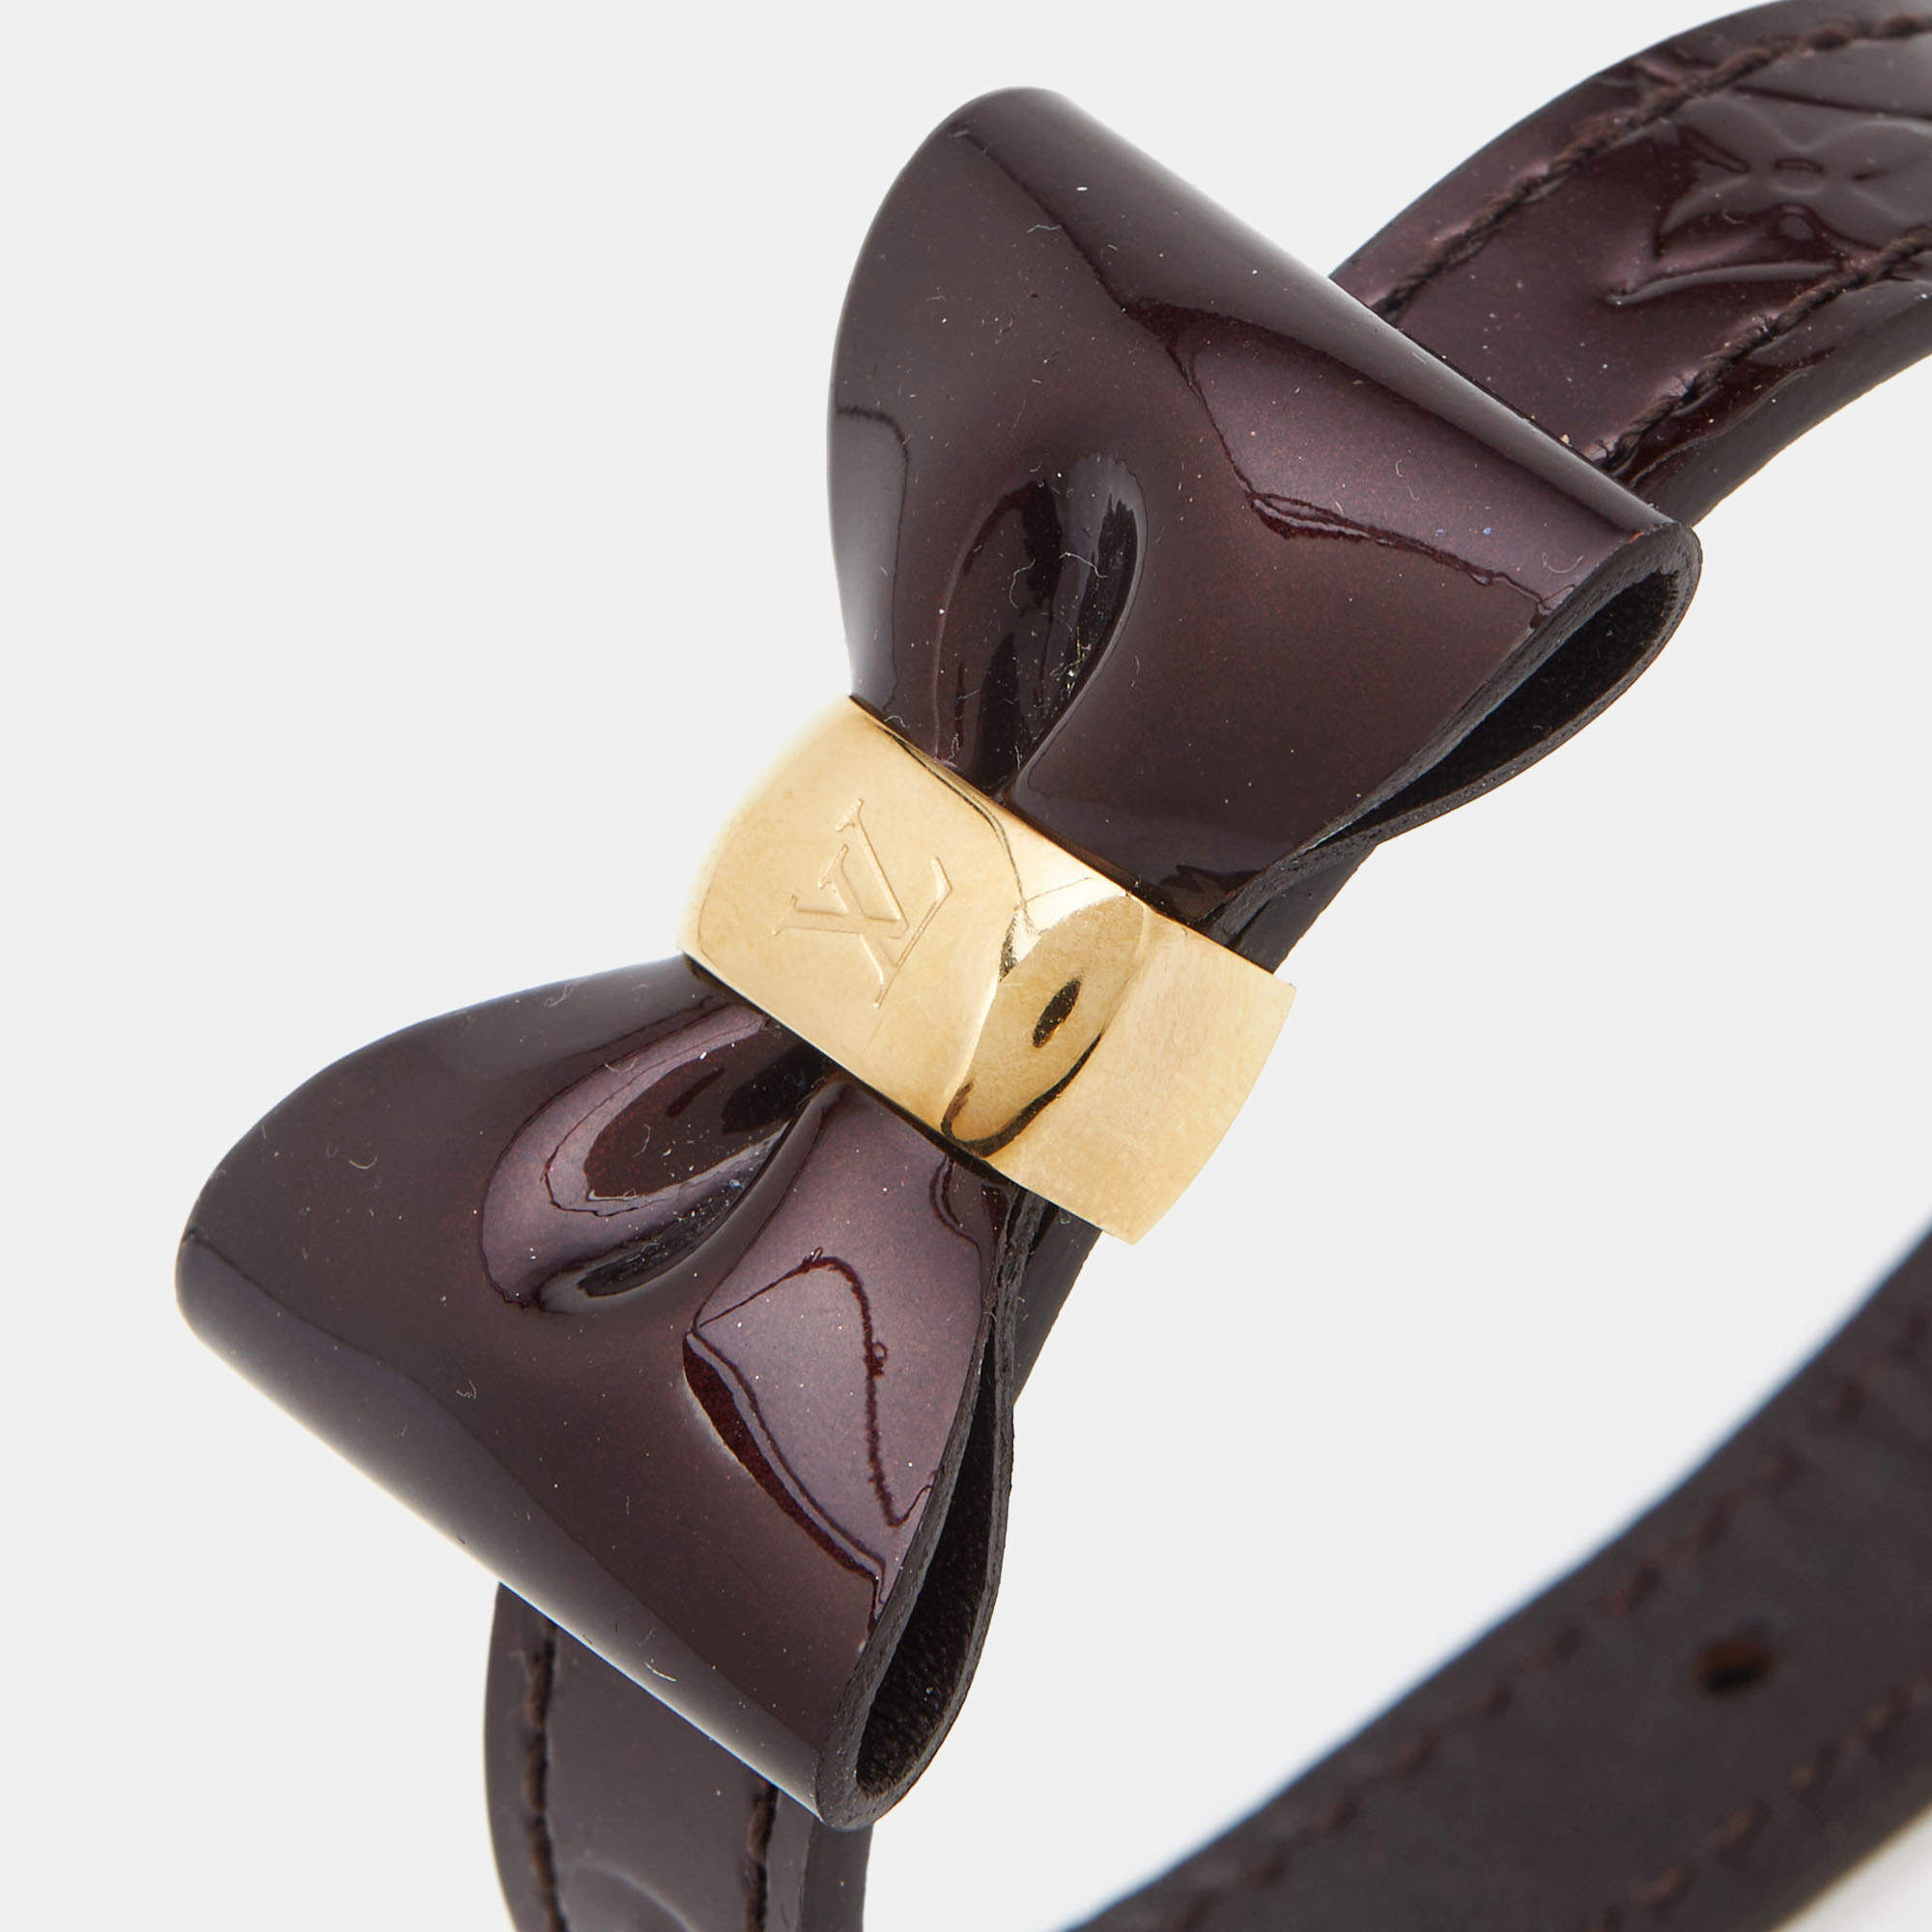 Louis Vuitton Monogram Leather Favorite Bow Bracelet